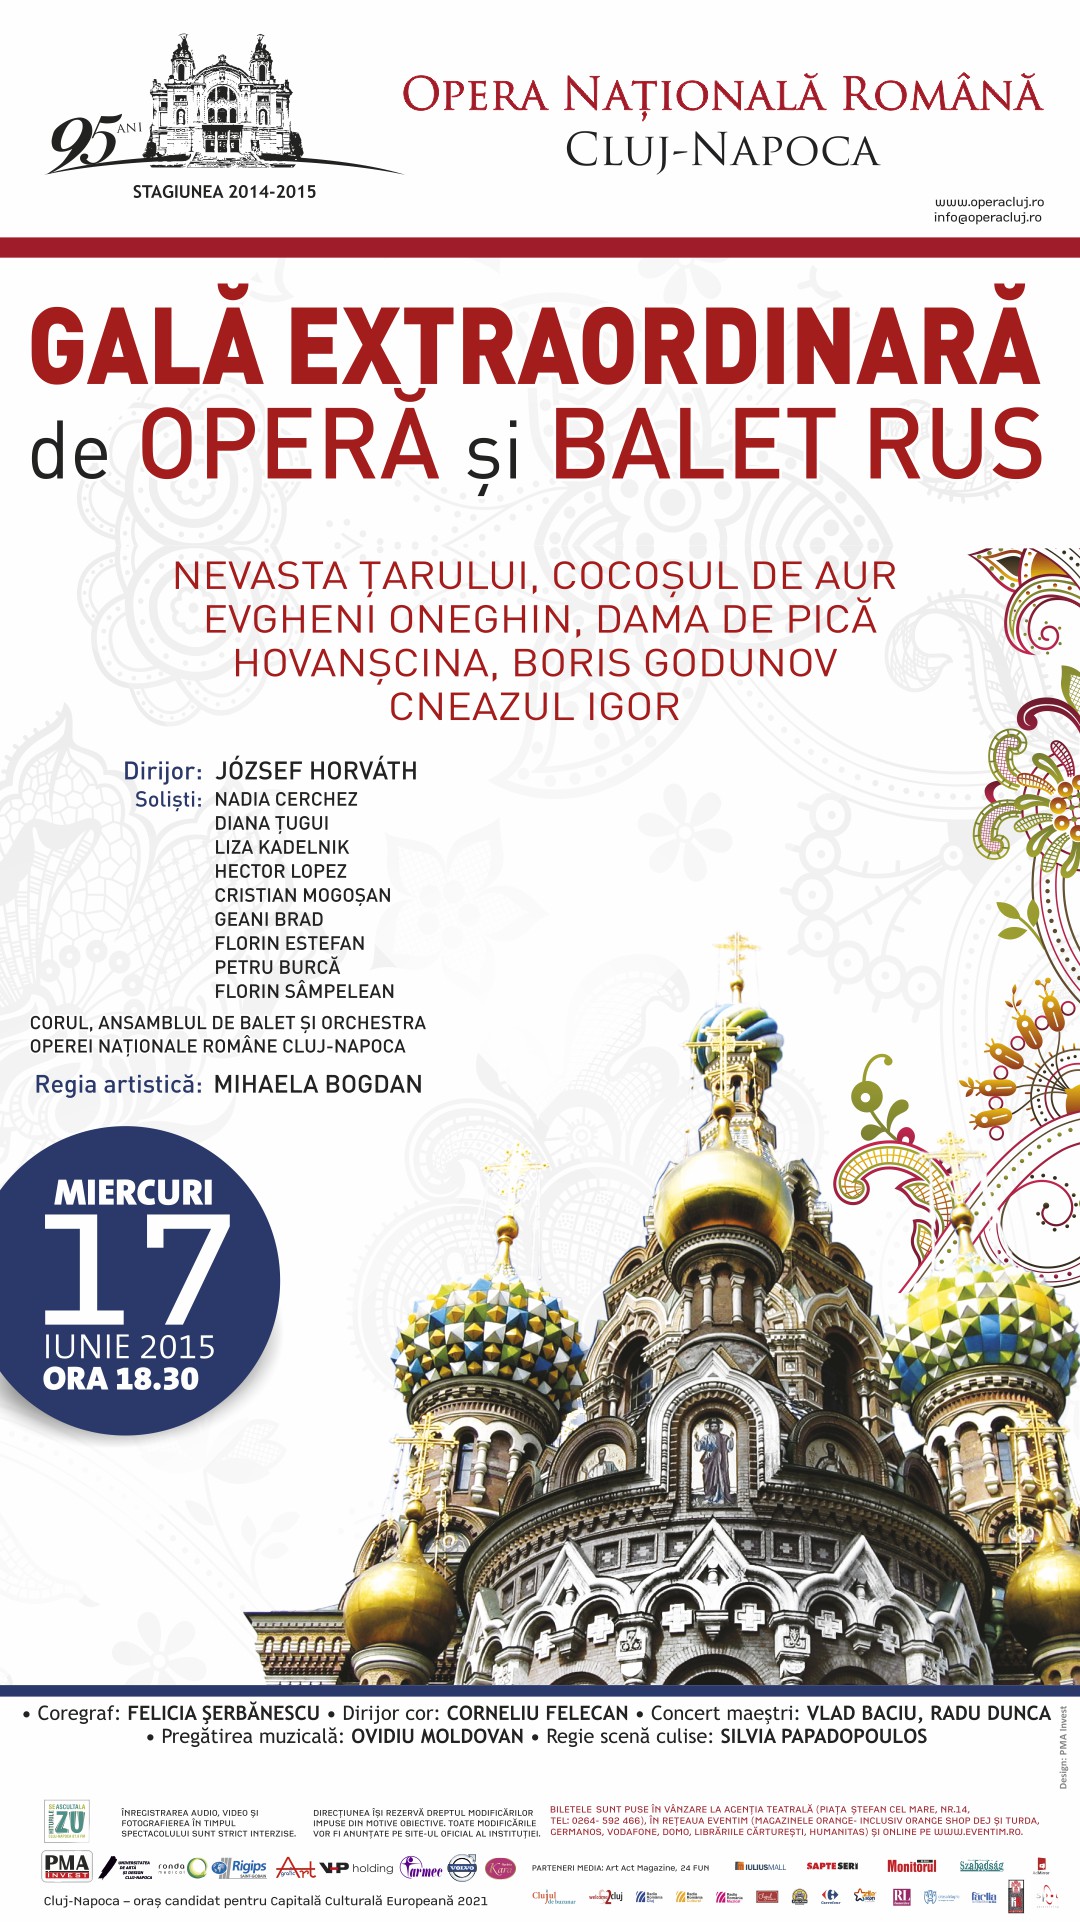 Gala Extraordinară de Operă și Balet Rus. Un regal muzical în premieră, miercuri 17 iunie